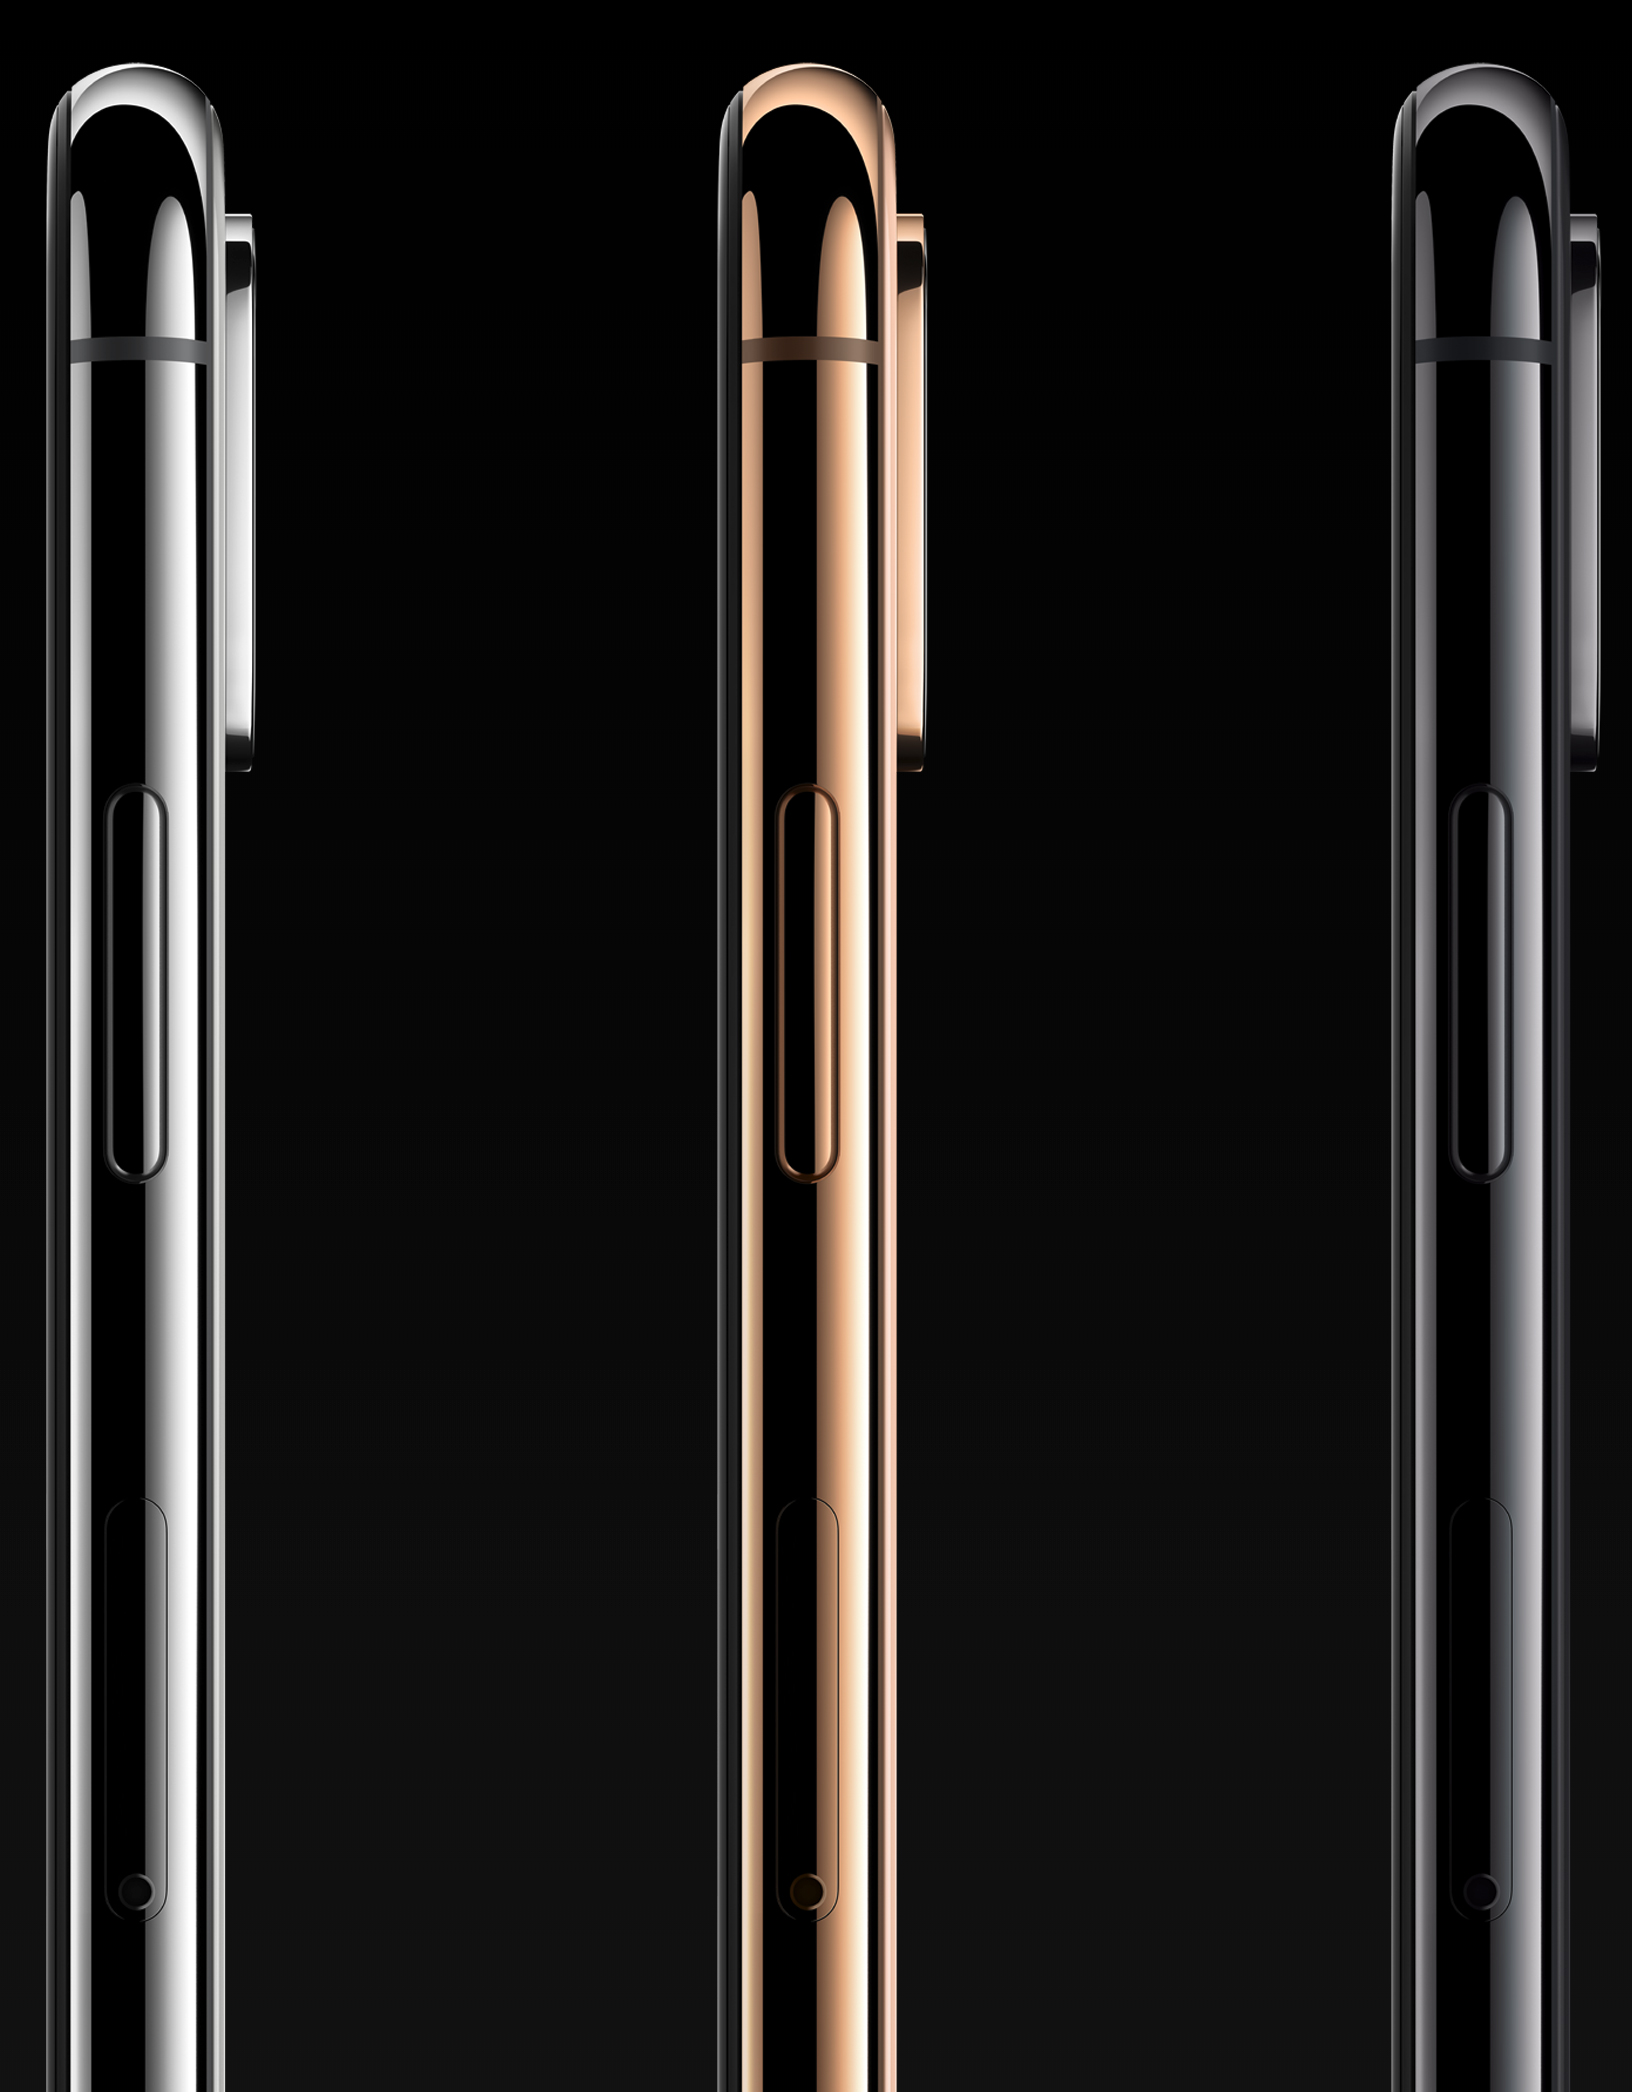 Los tres nuevos colores del iPhone XS